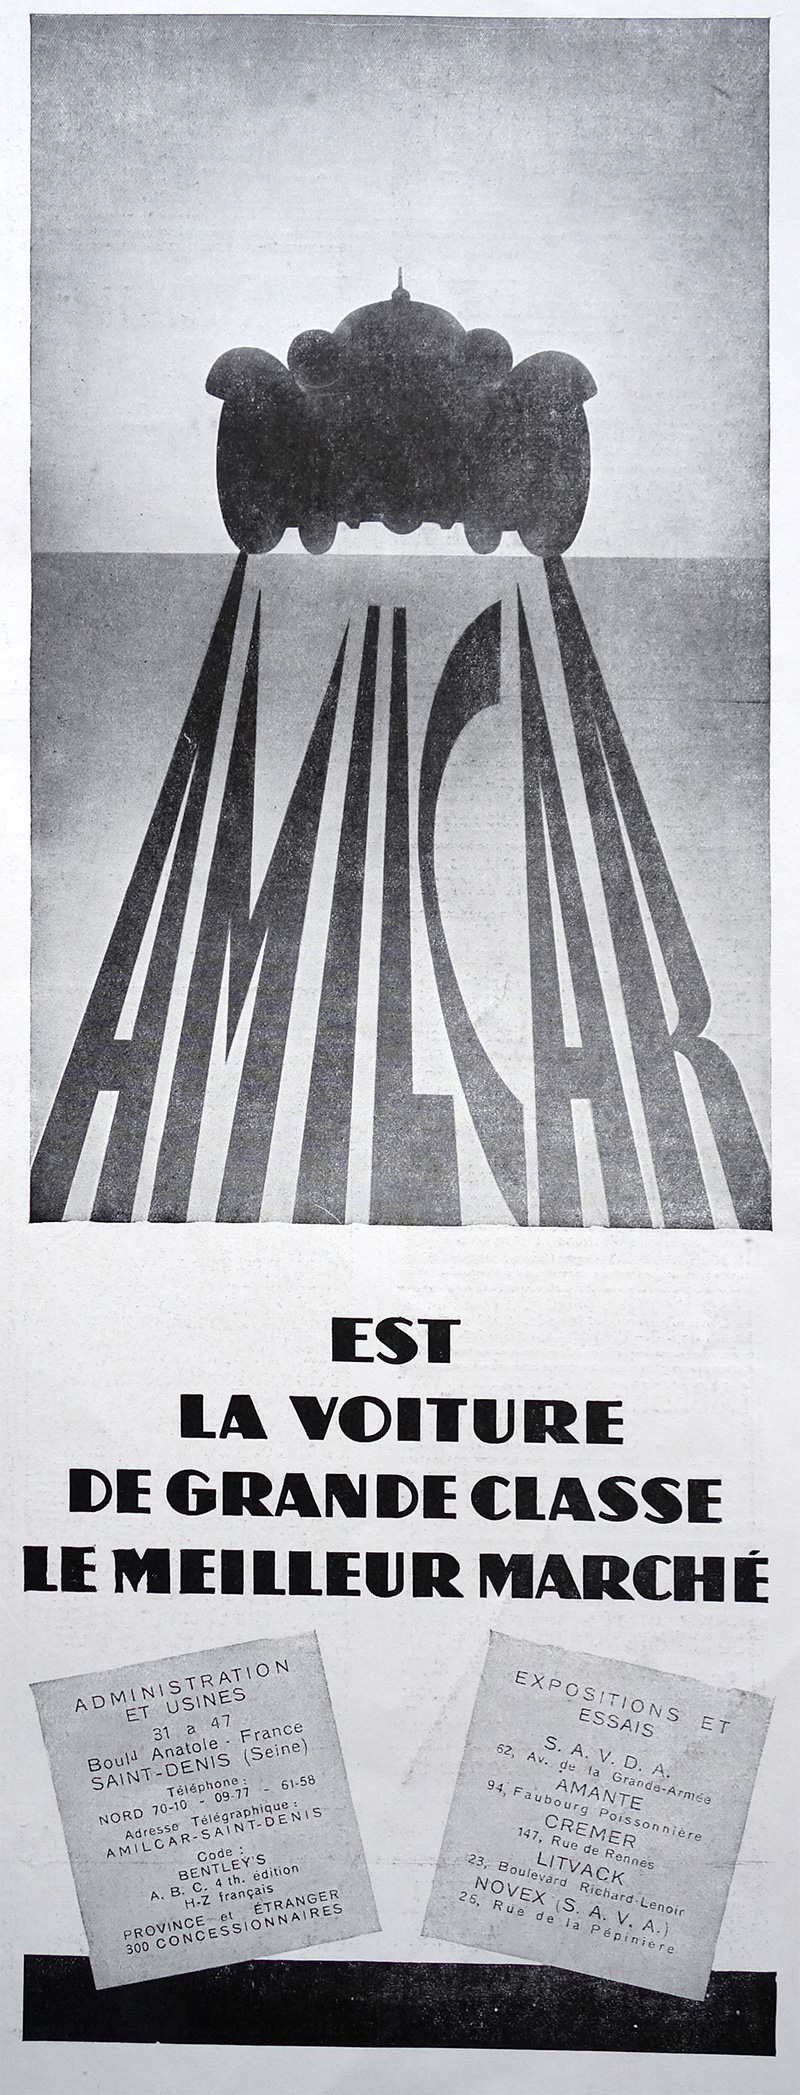 PUBLICITE ANCIENNE - AMICAR est la voiture de grande classe le meilleur marché © L'Illustration - 1920-1930